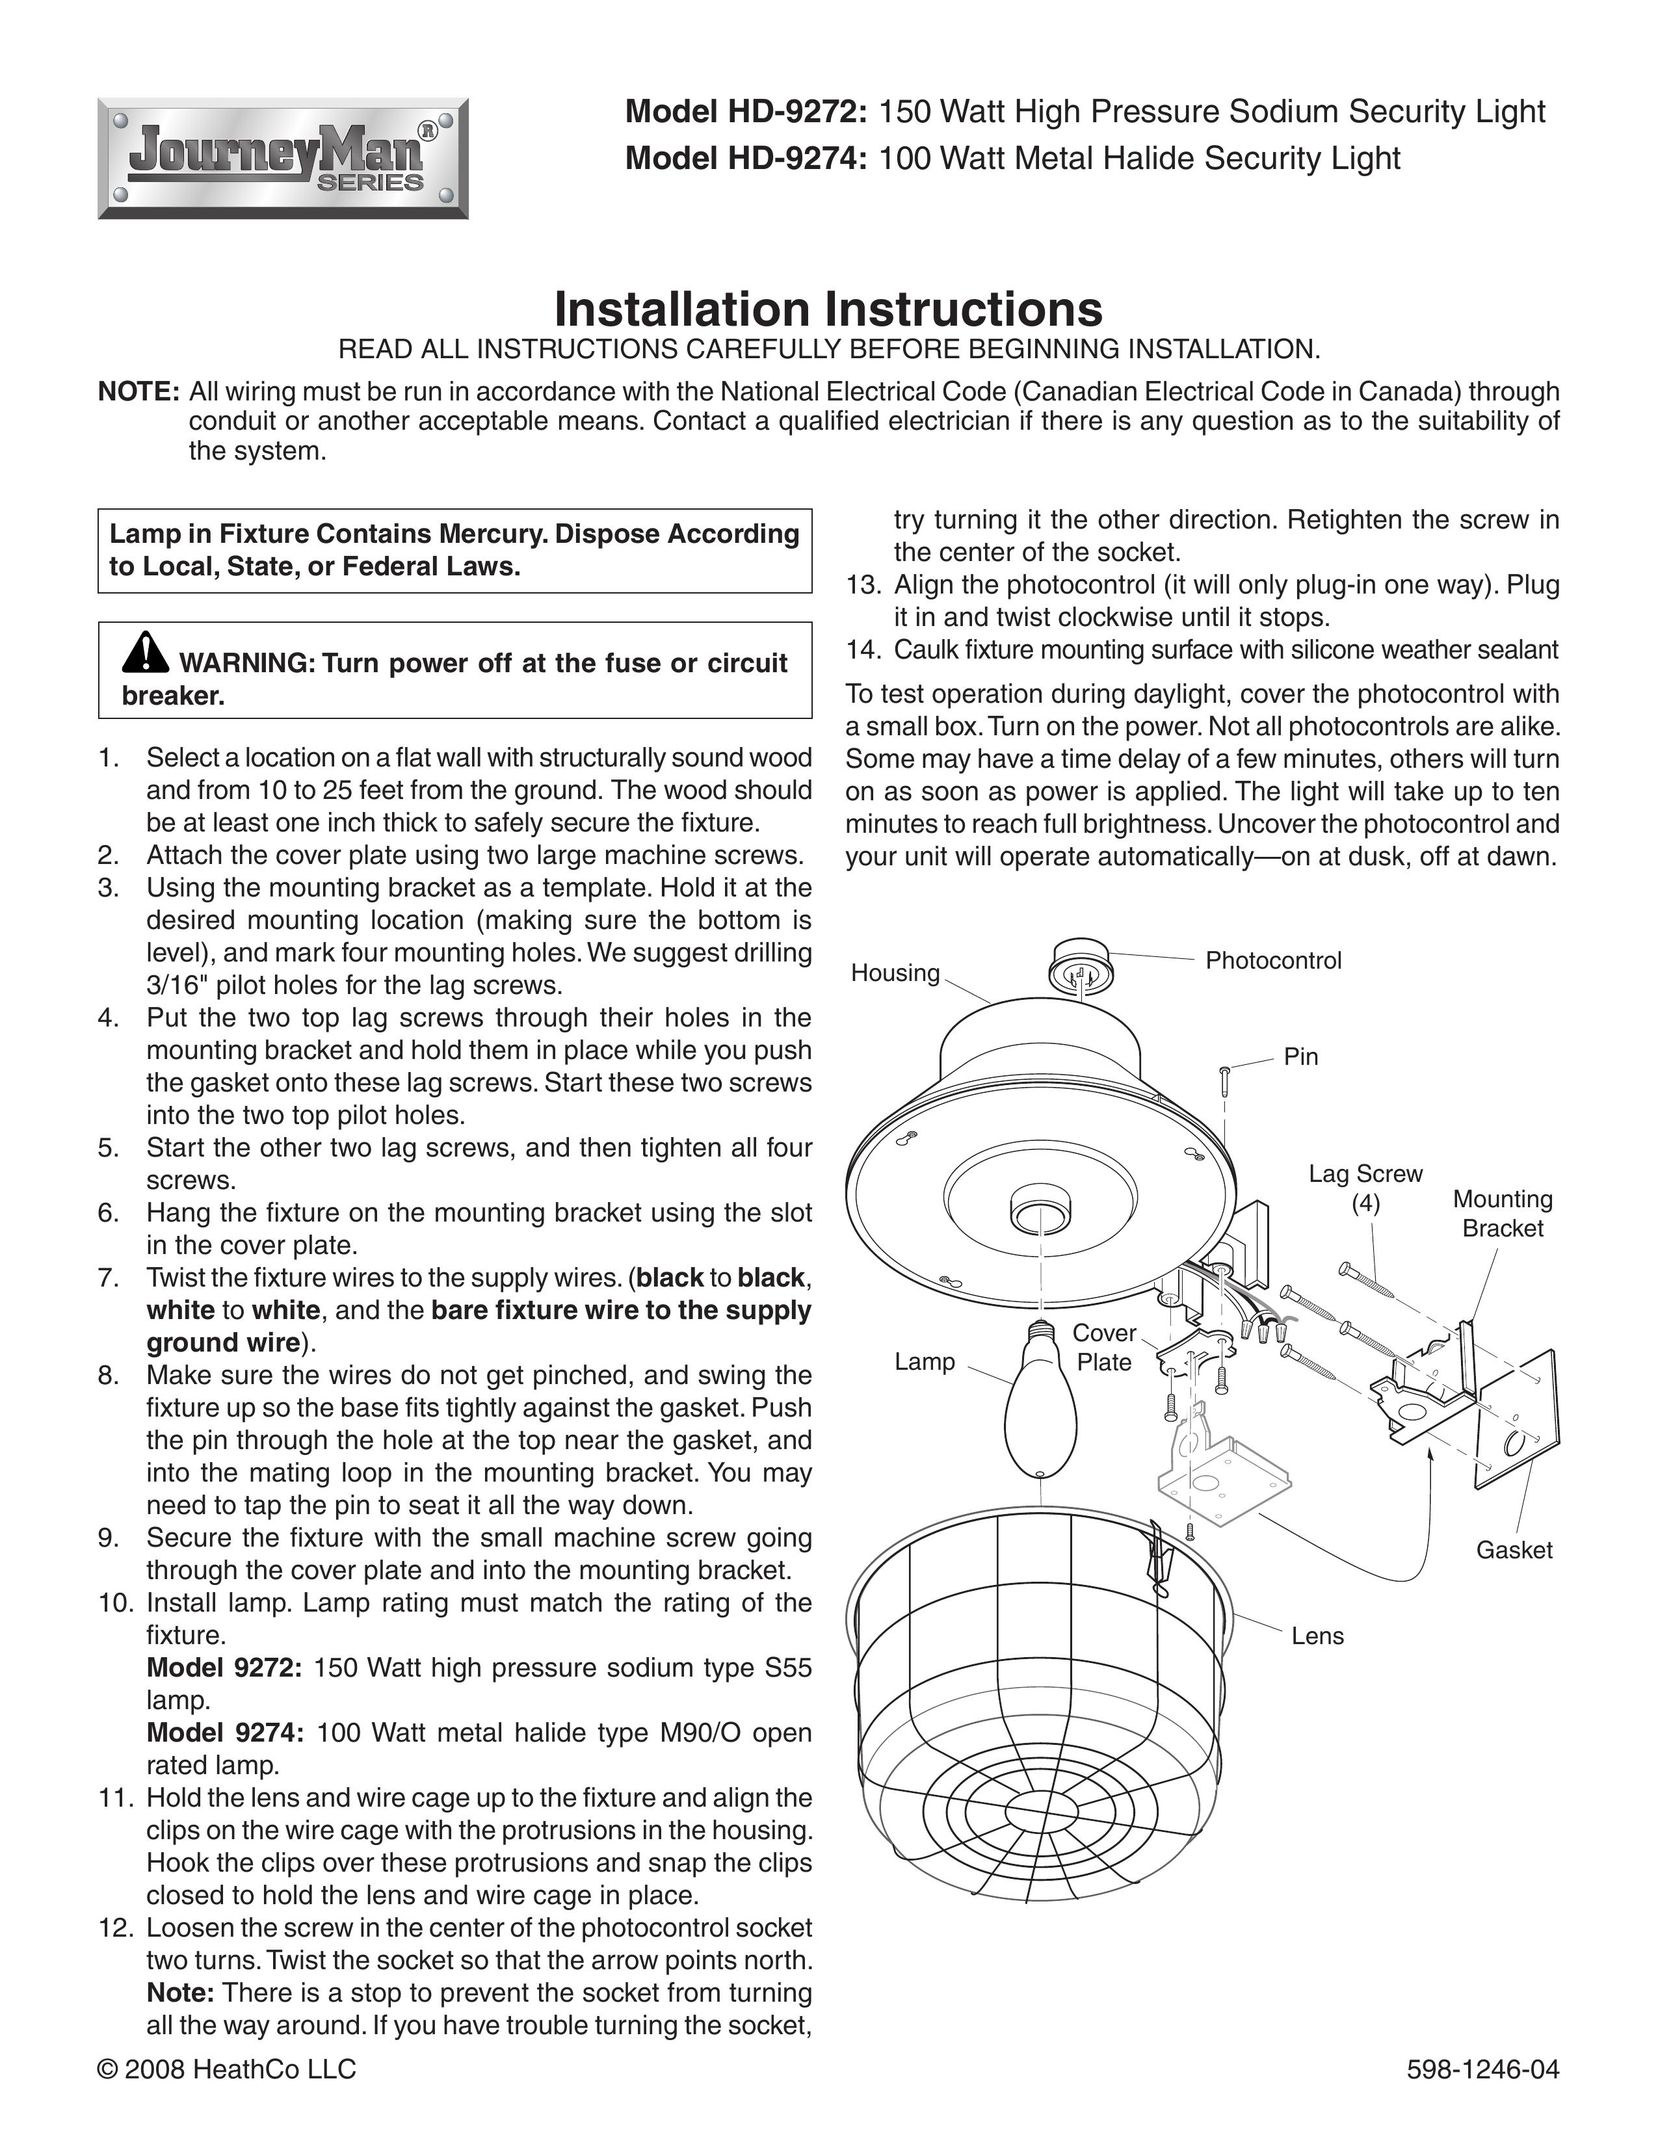 Heath Zenith HD-9274 Indoor Furnishings User Manual